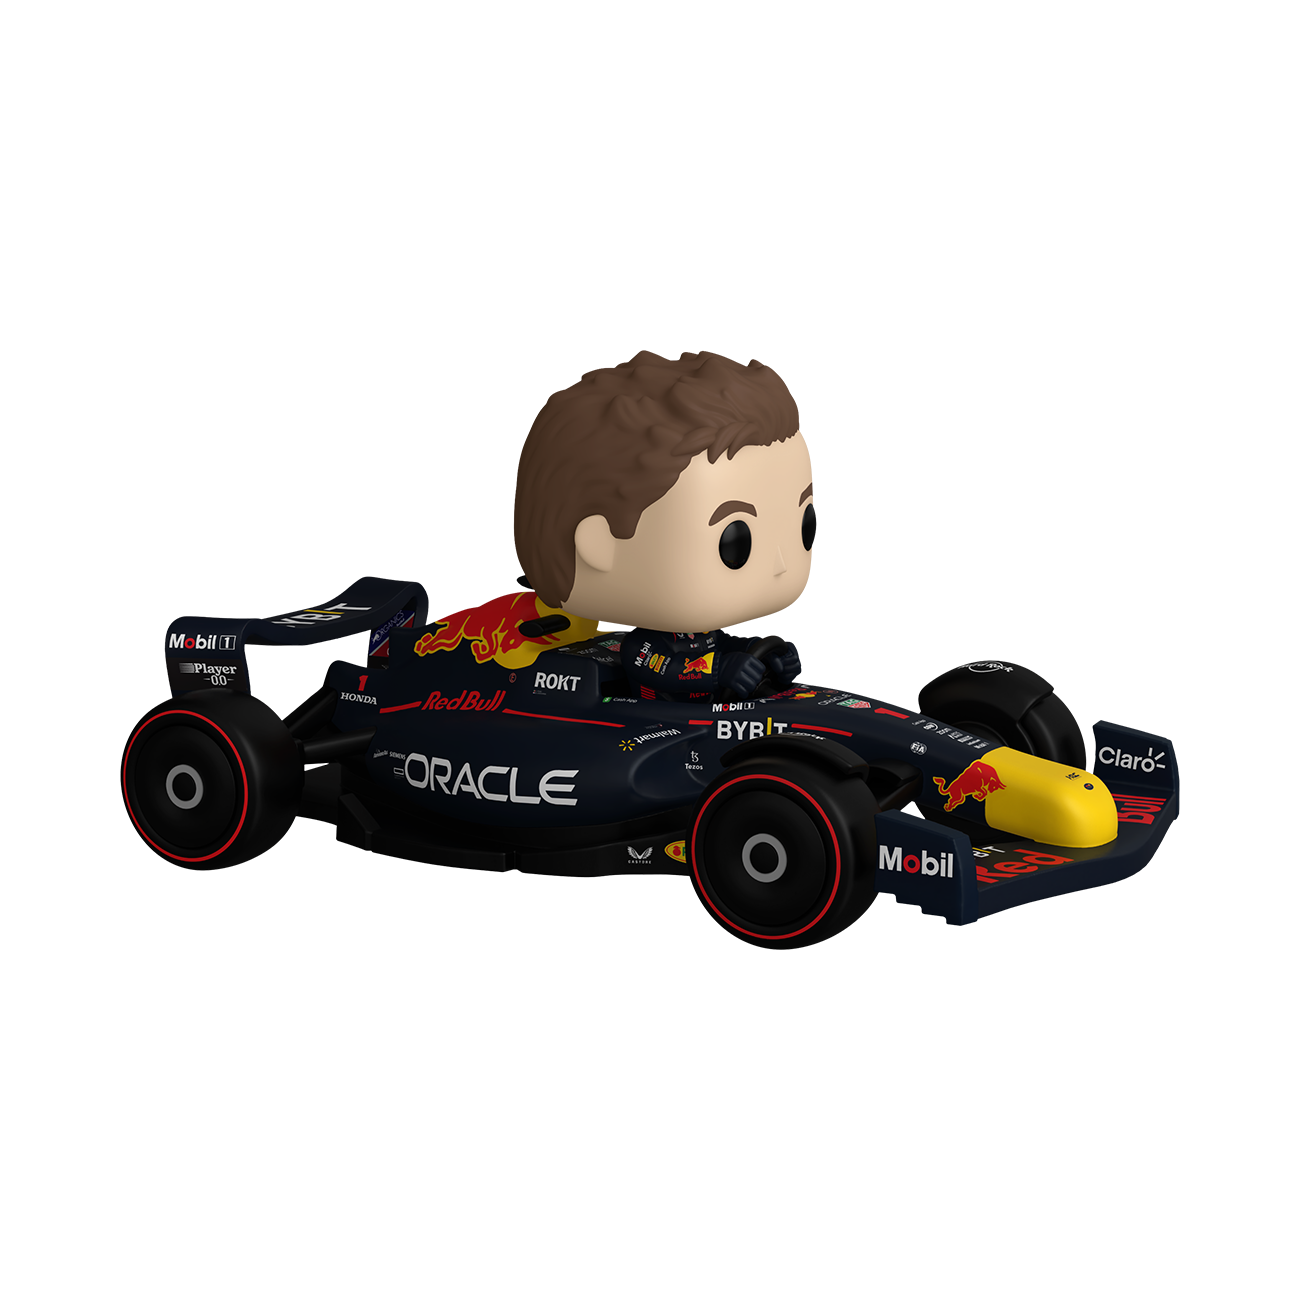  Funko Pop! Racing: Max Verstappen : Toys & Games